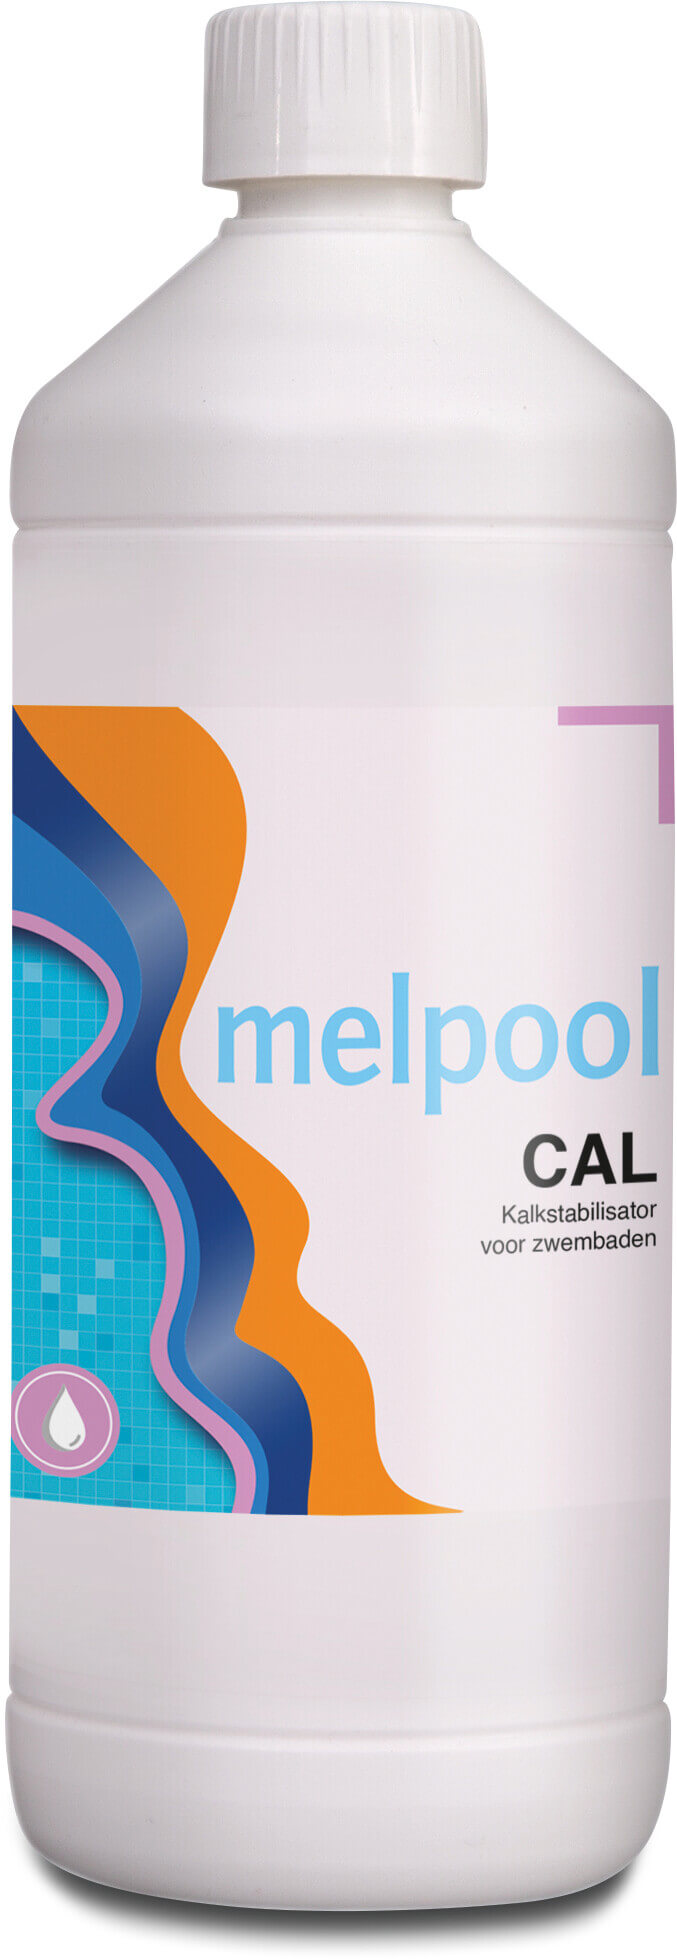 Melpool CAL Phosphonic acid, stabilised 1ltr